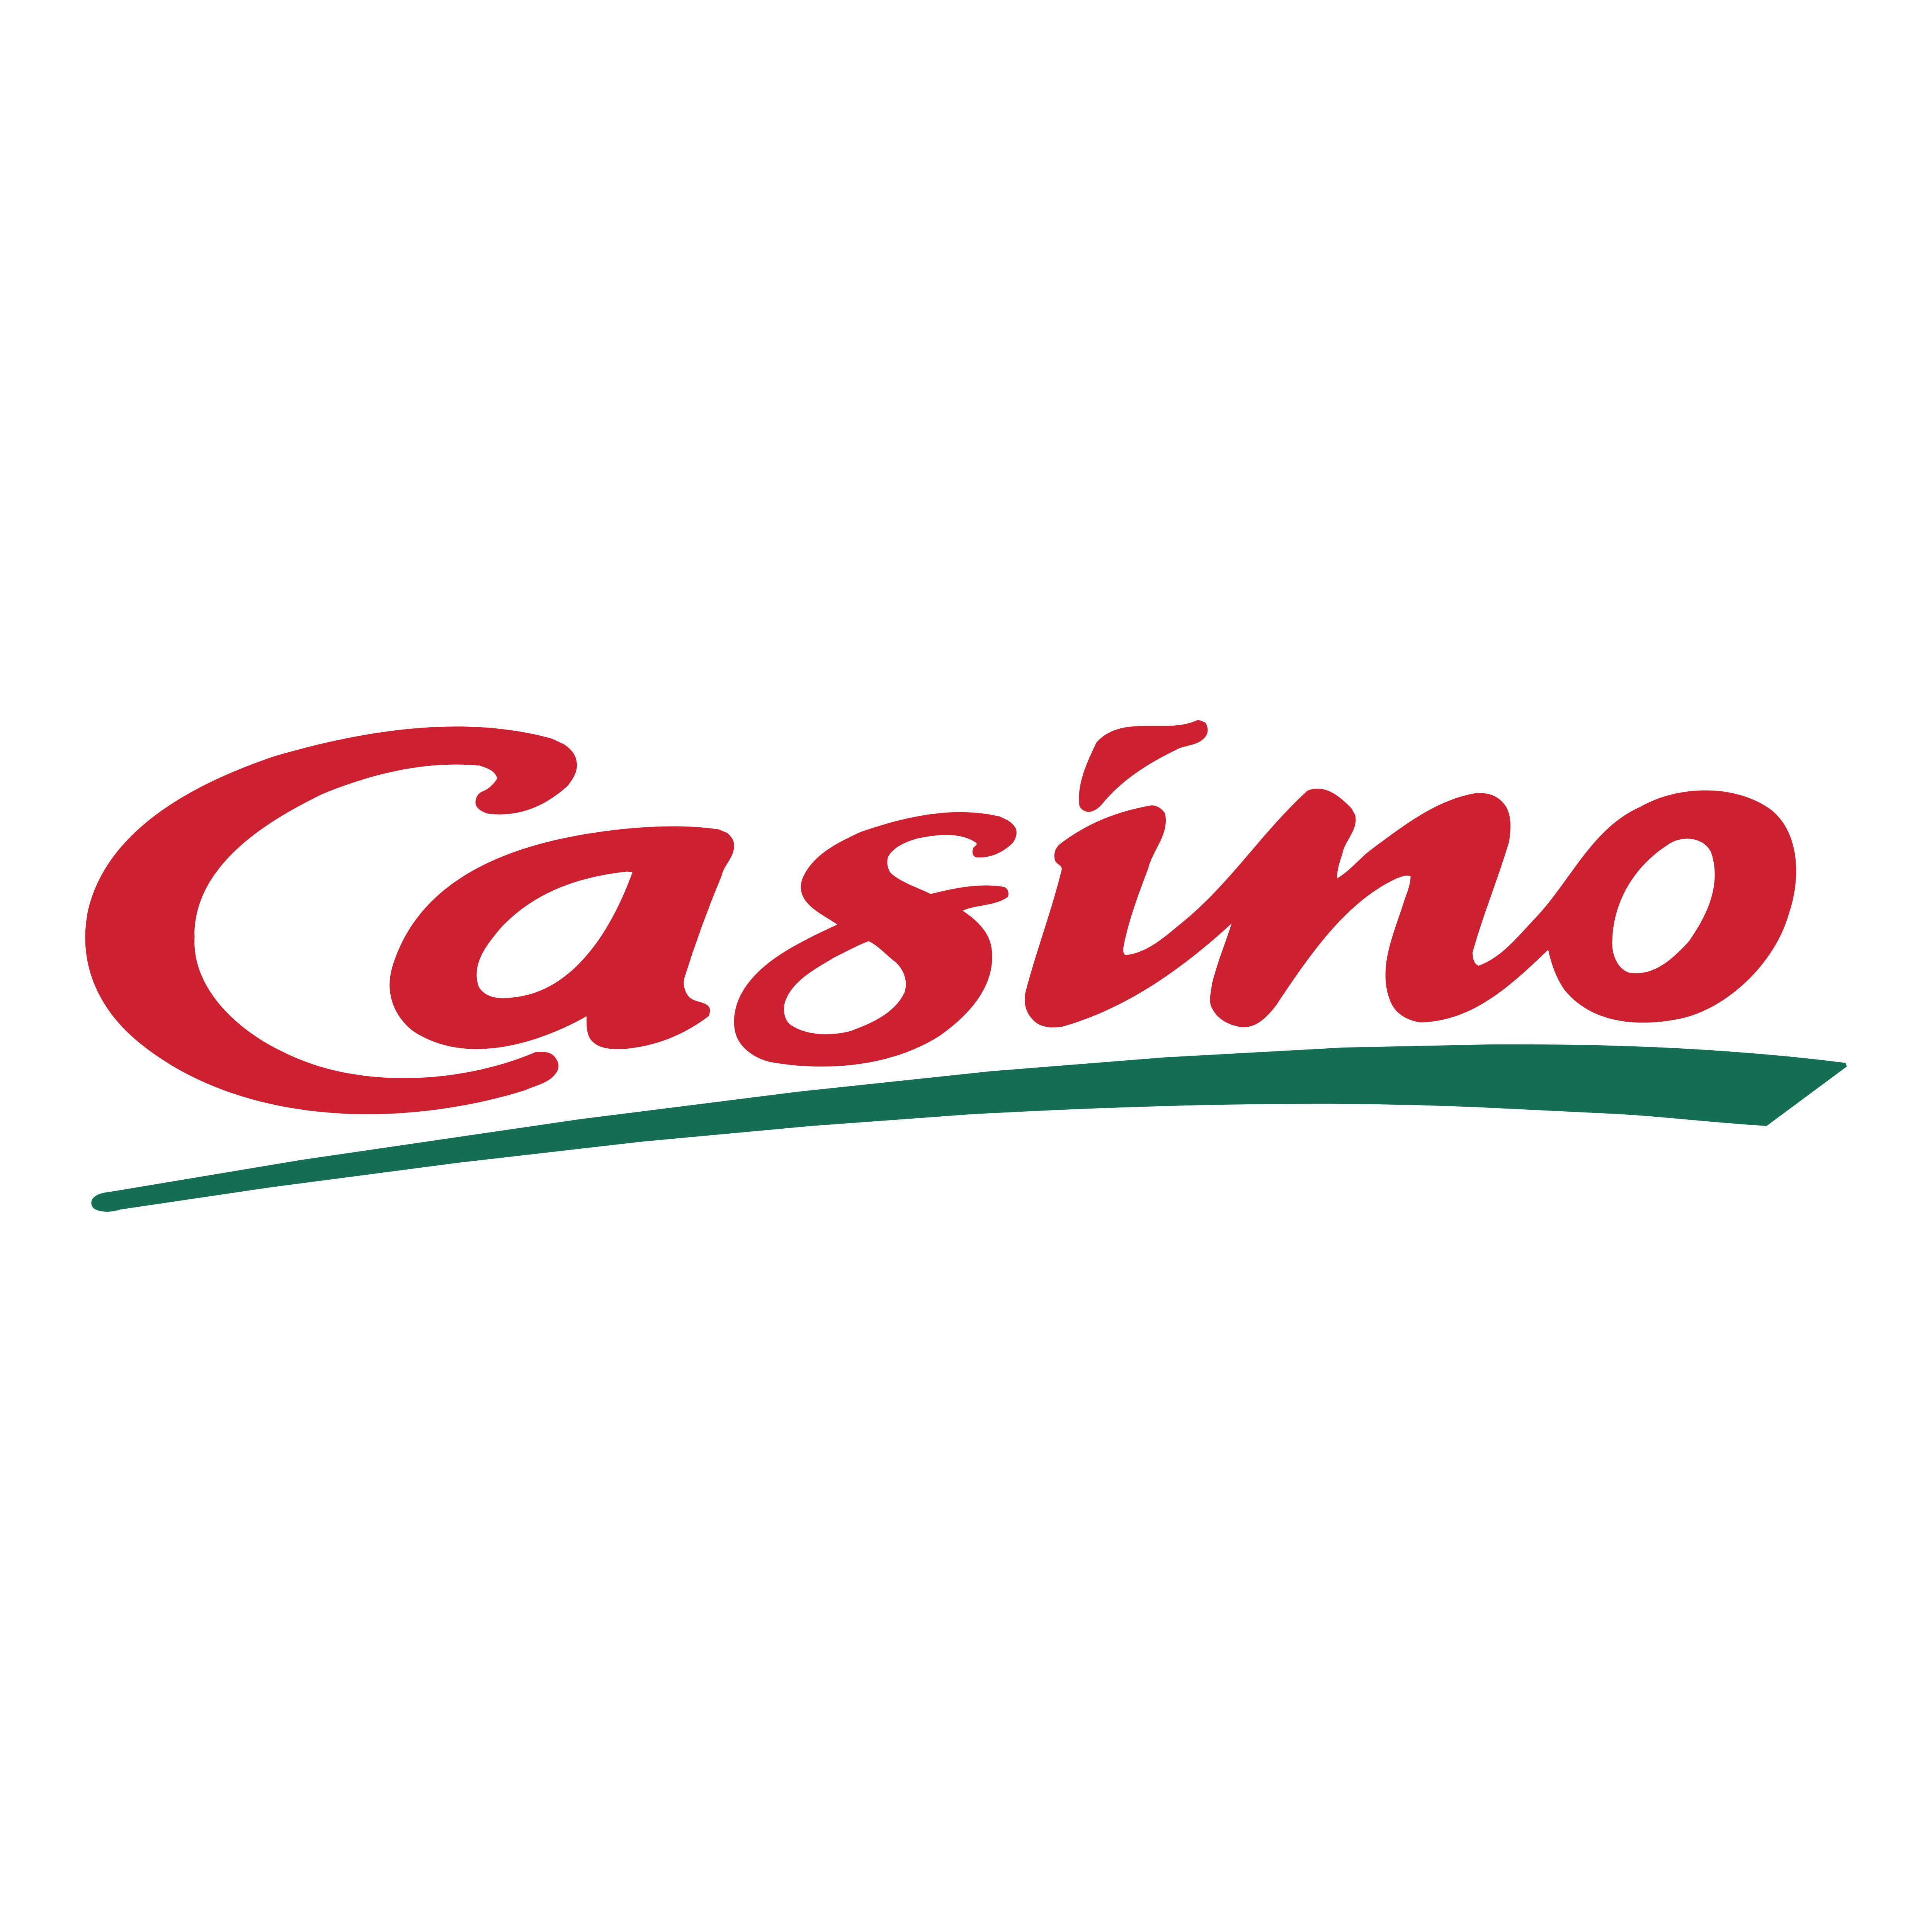 Casino_logo_green.png